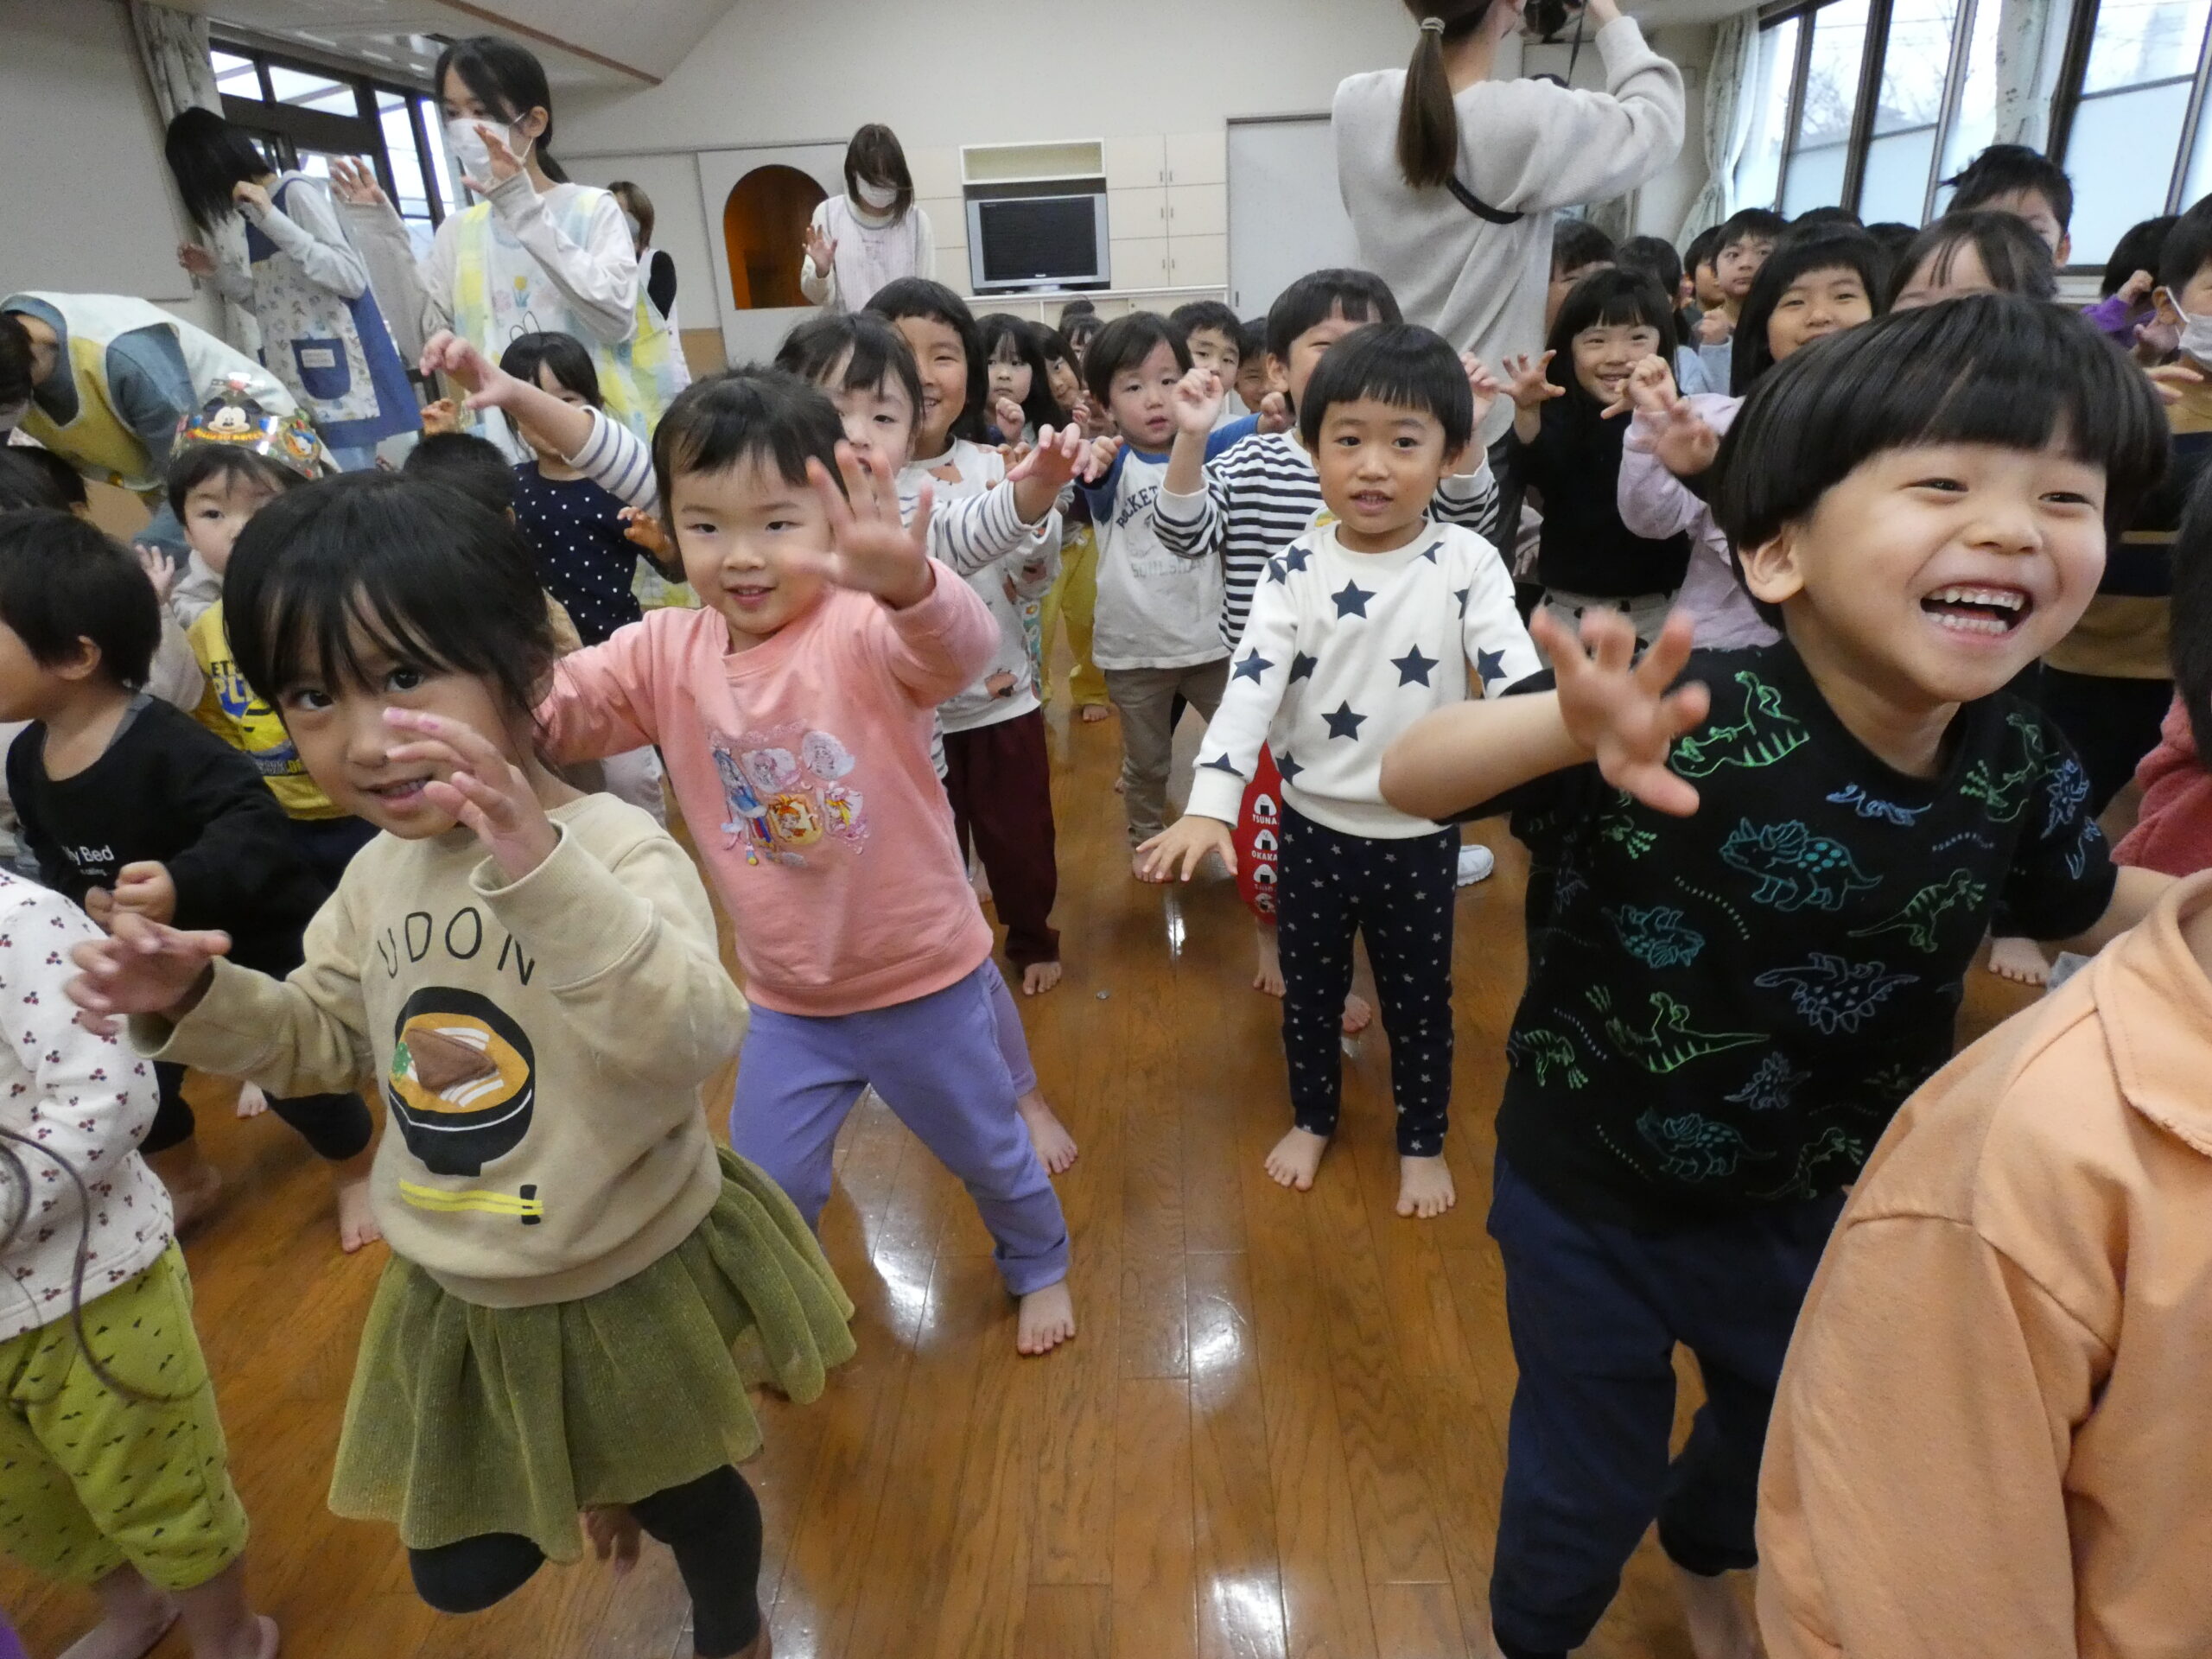 歌や踊りが大好きな子どもたちは、大喜びでした♡